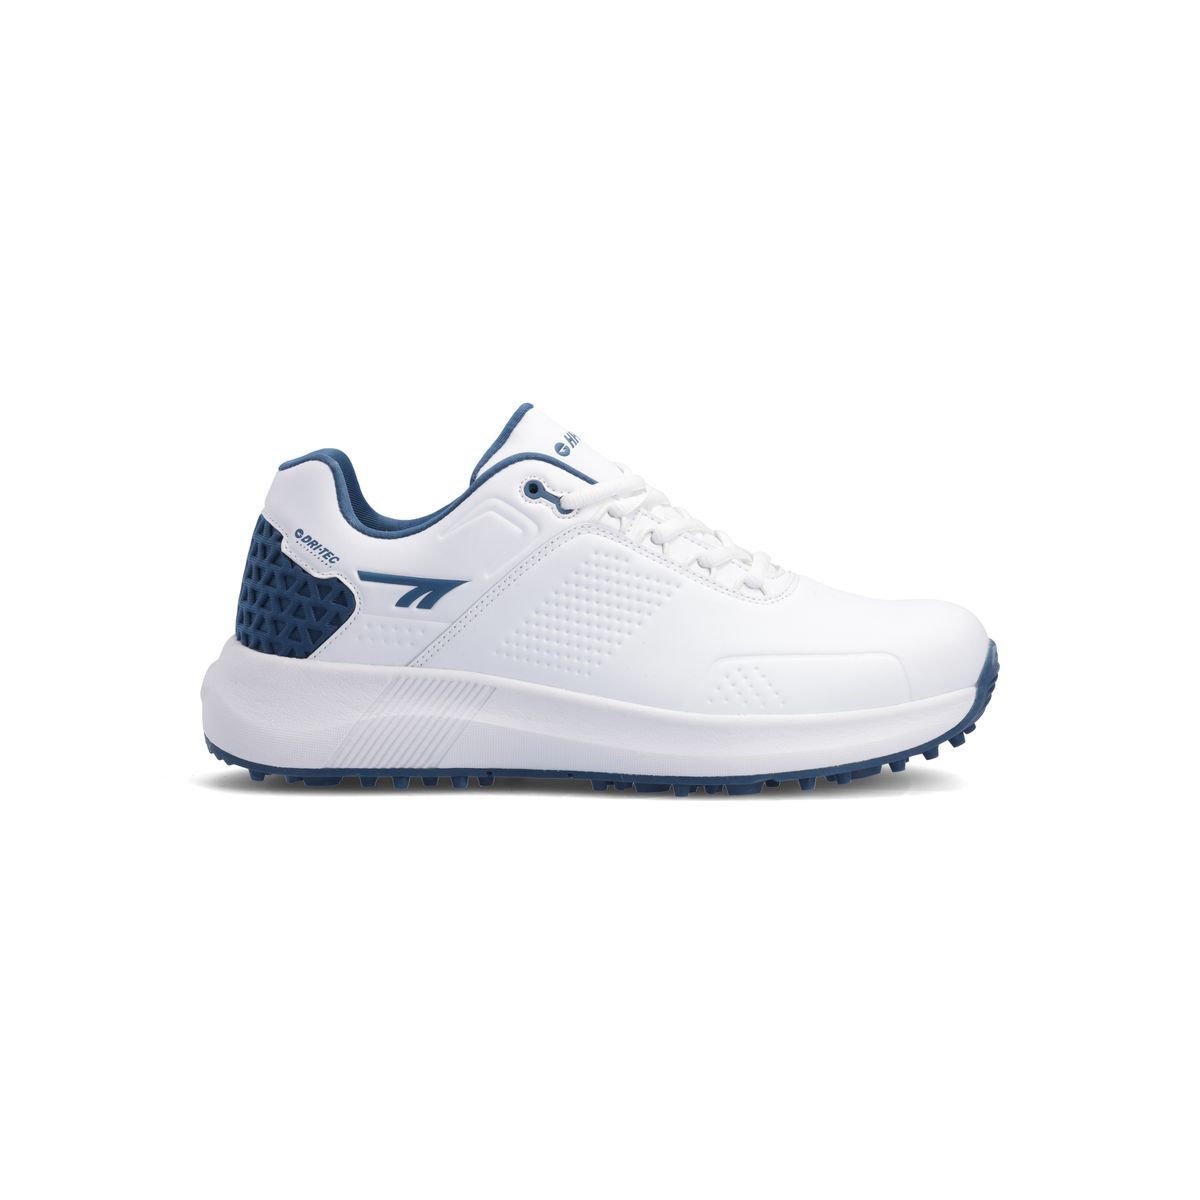 Hi-Tec Men's Tee-Bird Golf Shoes - White/Navy | Shop Today. Get it ...